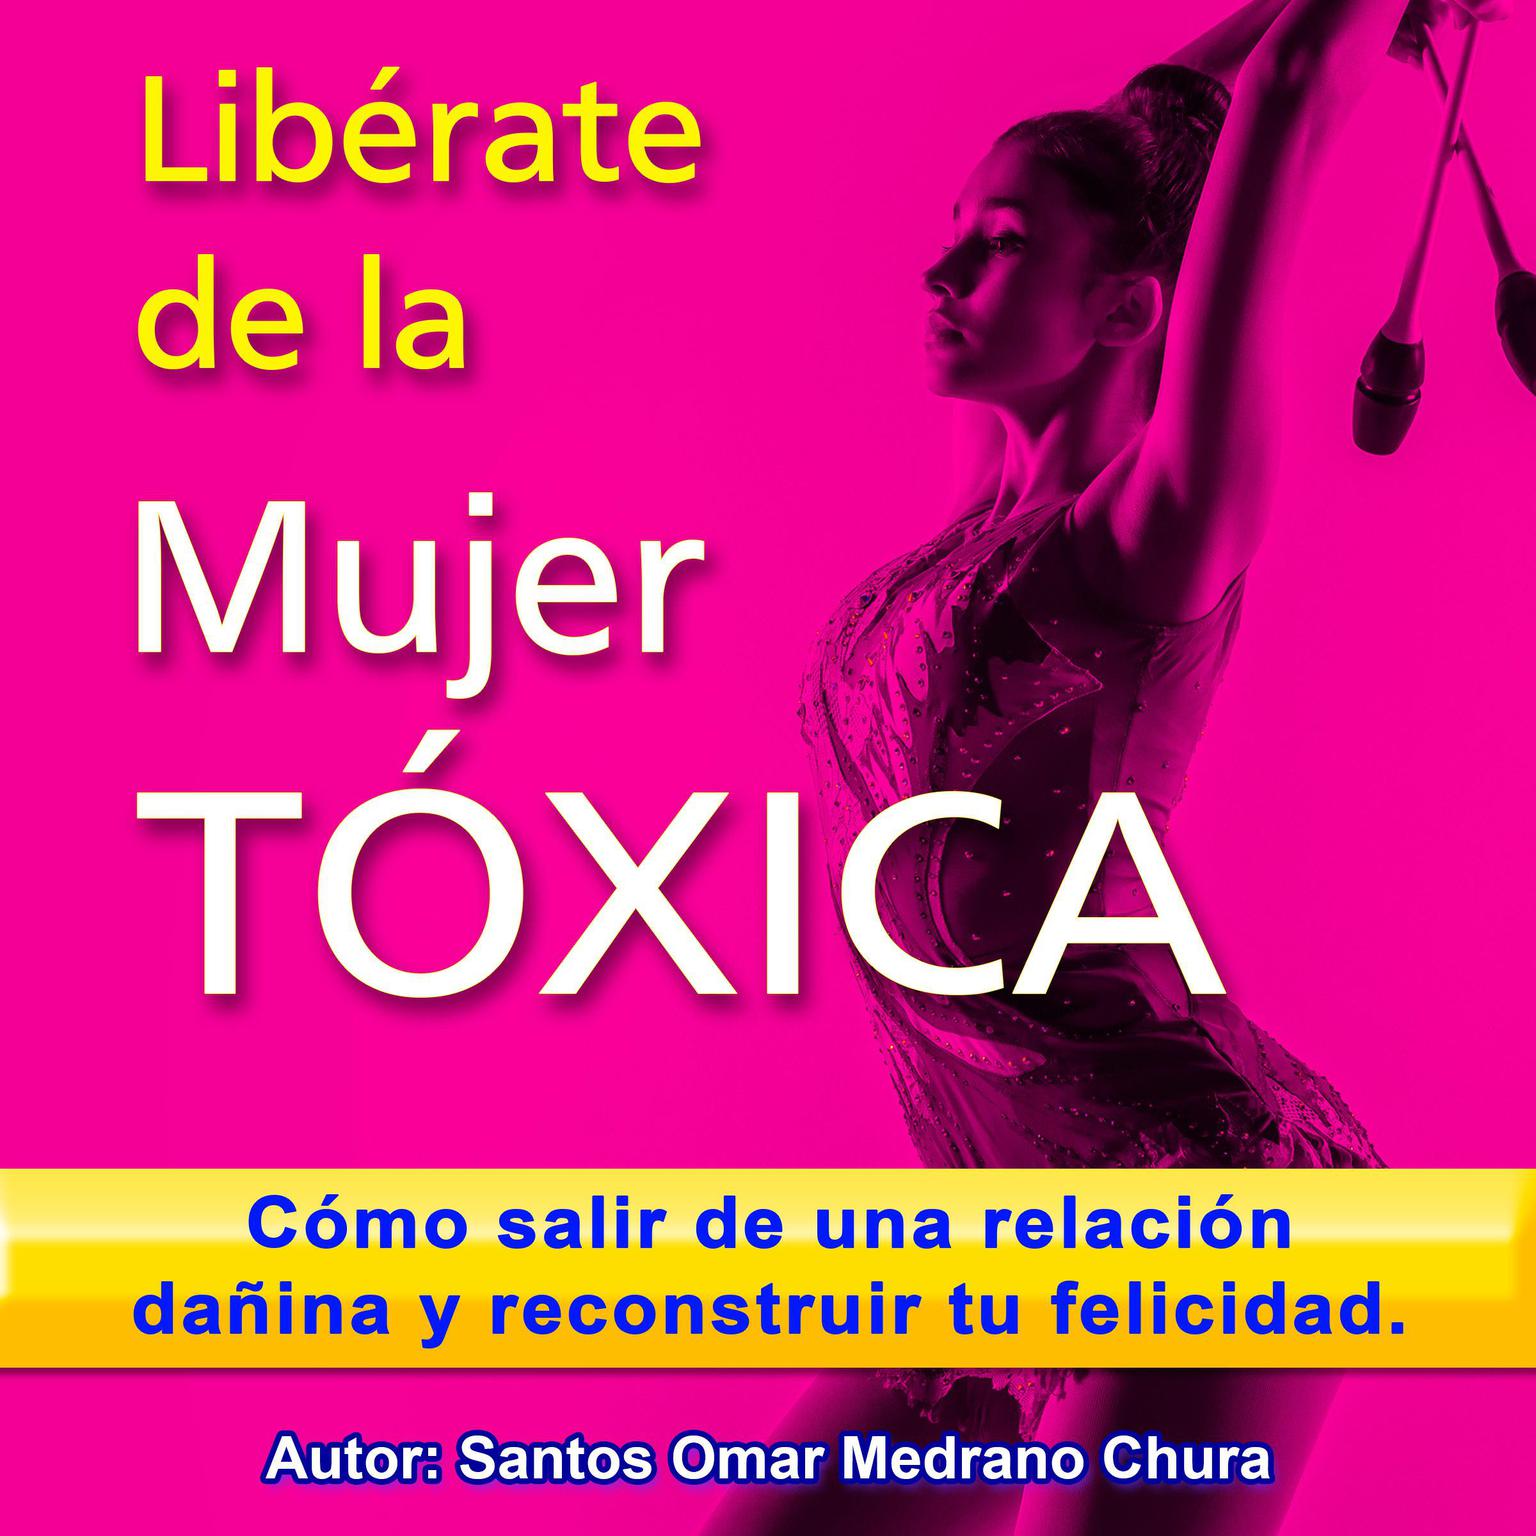 Libérate de la mujer tóxica: Cómo salir de una relación dañina y reconstruir tu felicidad. Audiobook, by Santos Omar Medrano Chura